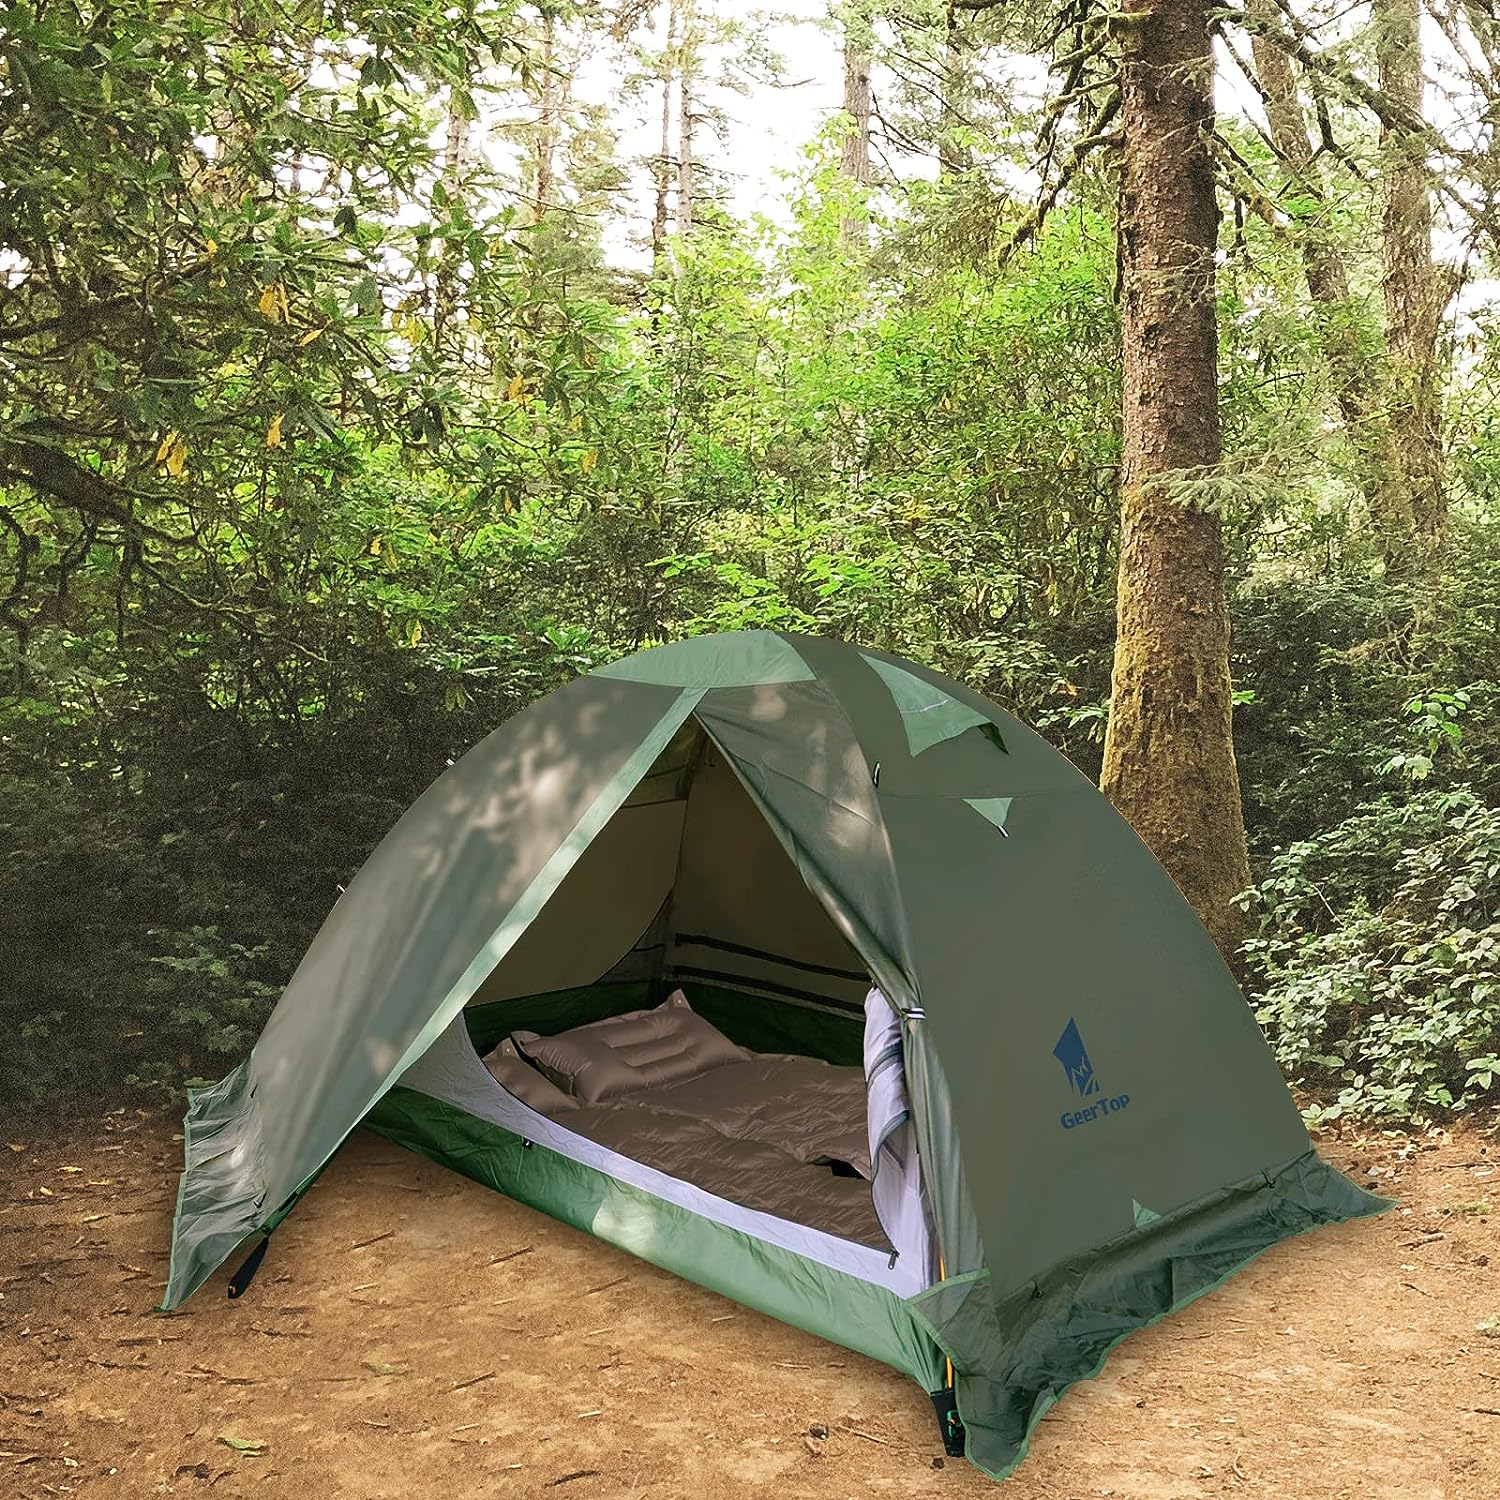 Geertop Tente de Camping 2 Personnes, Dôme Tente Étanche Double Couche Léger Tente 3-4 Saison pour Camping Outdoor Randonnée - fitnessterapy